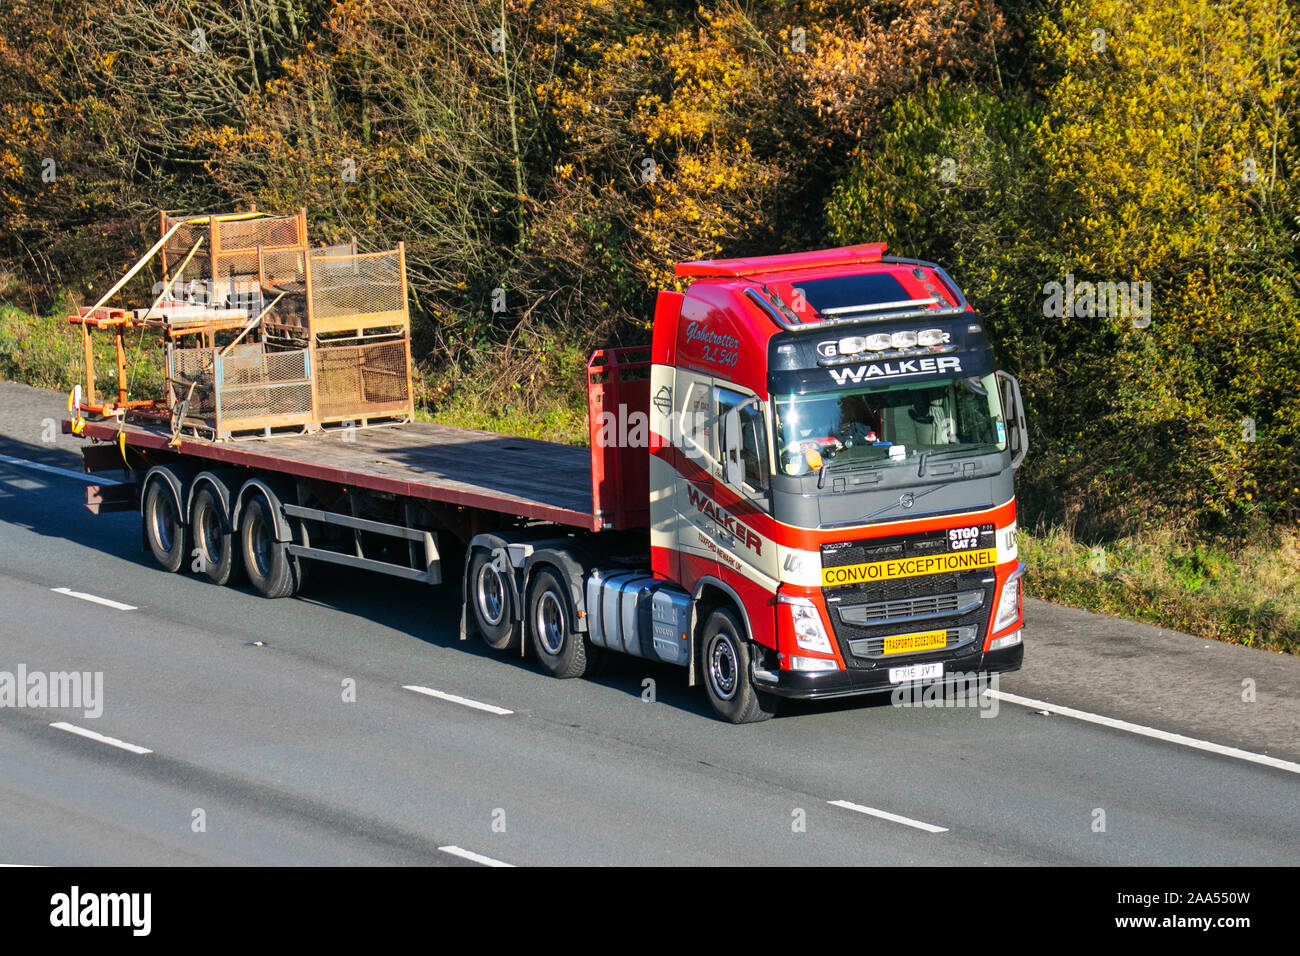 Walker Convoi Volvo Truck exceptionnelles ; plus proche de lourdes charges, les camions de livraison transport en vrac, camion, transport, livraison, transport, industrie, surdimensionnés fret en M6 à Lancaster, UK Banque D'Images